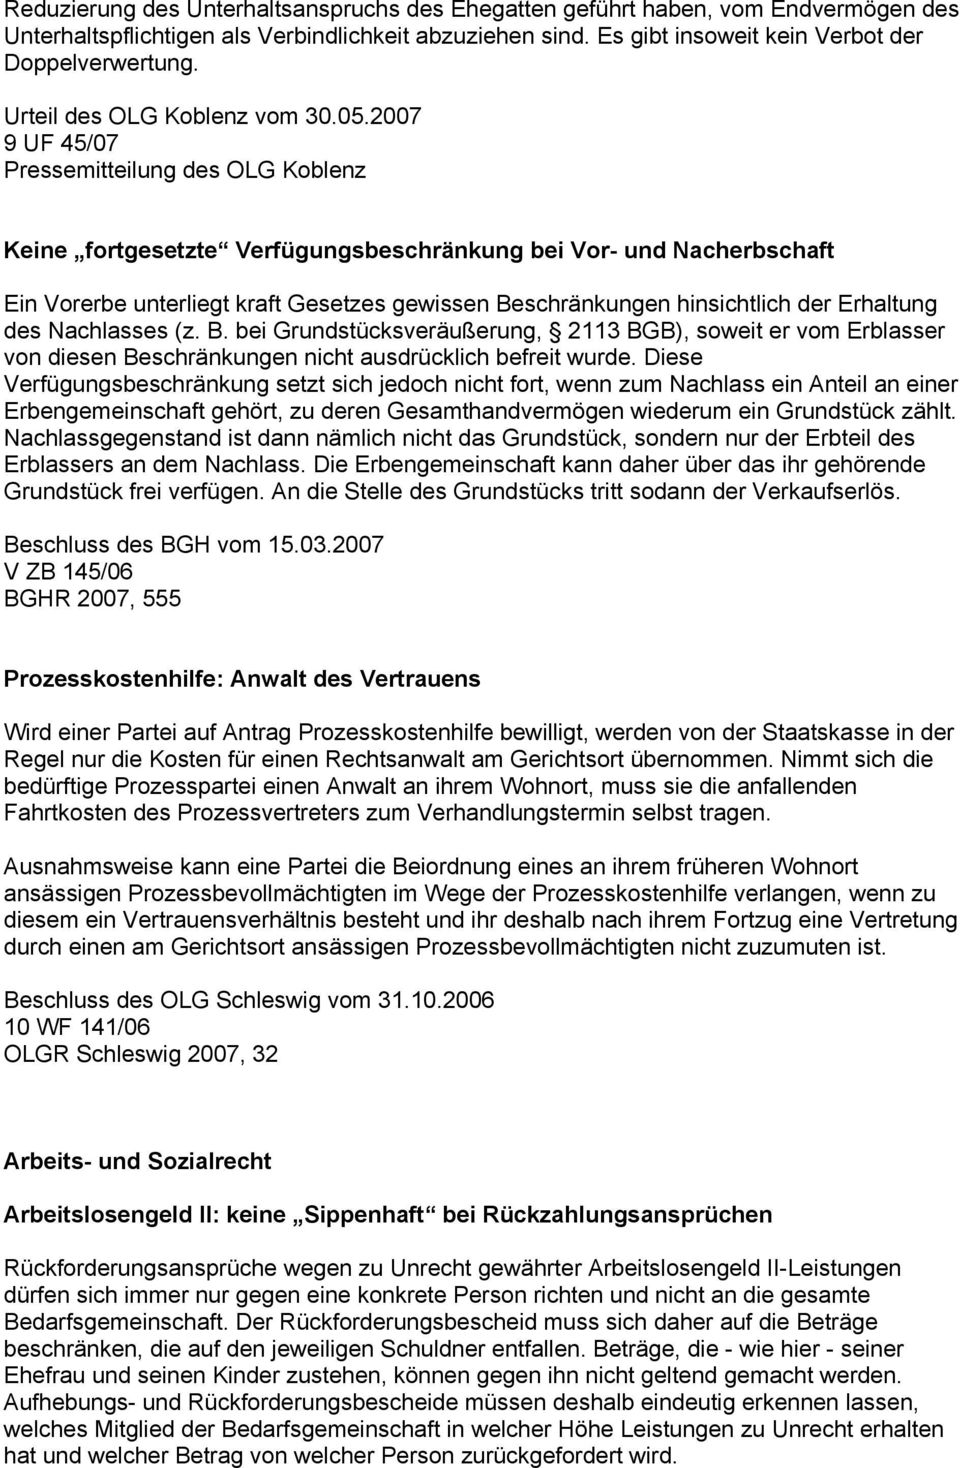 2007 9 UF 45/07 Pressemitteilung des OLG Koblenz Keine fortgesetzte Verfügungsbeschränkung bei Vor- und Nacherbschaft Ein Vorerbe unterliegt kraft Gesetzes gewissen Beschränkungen hinsichtlich der